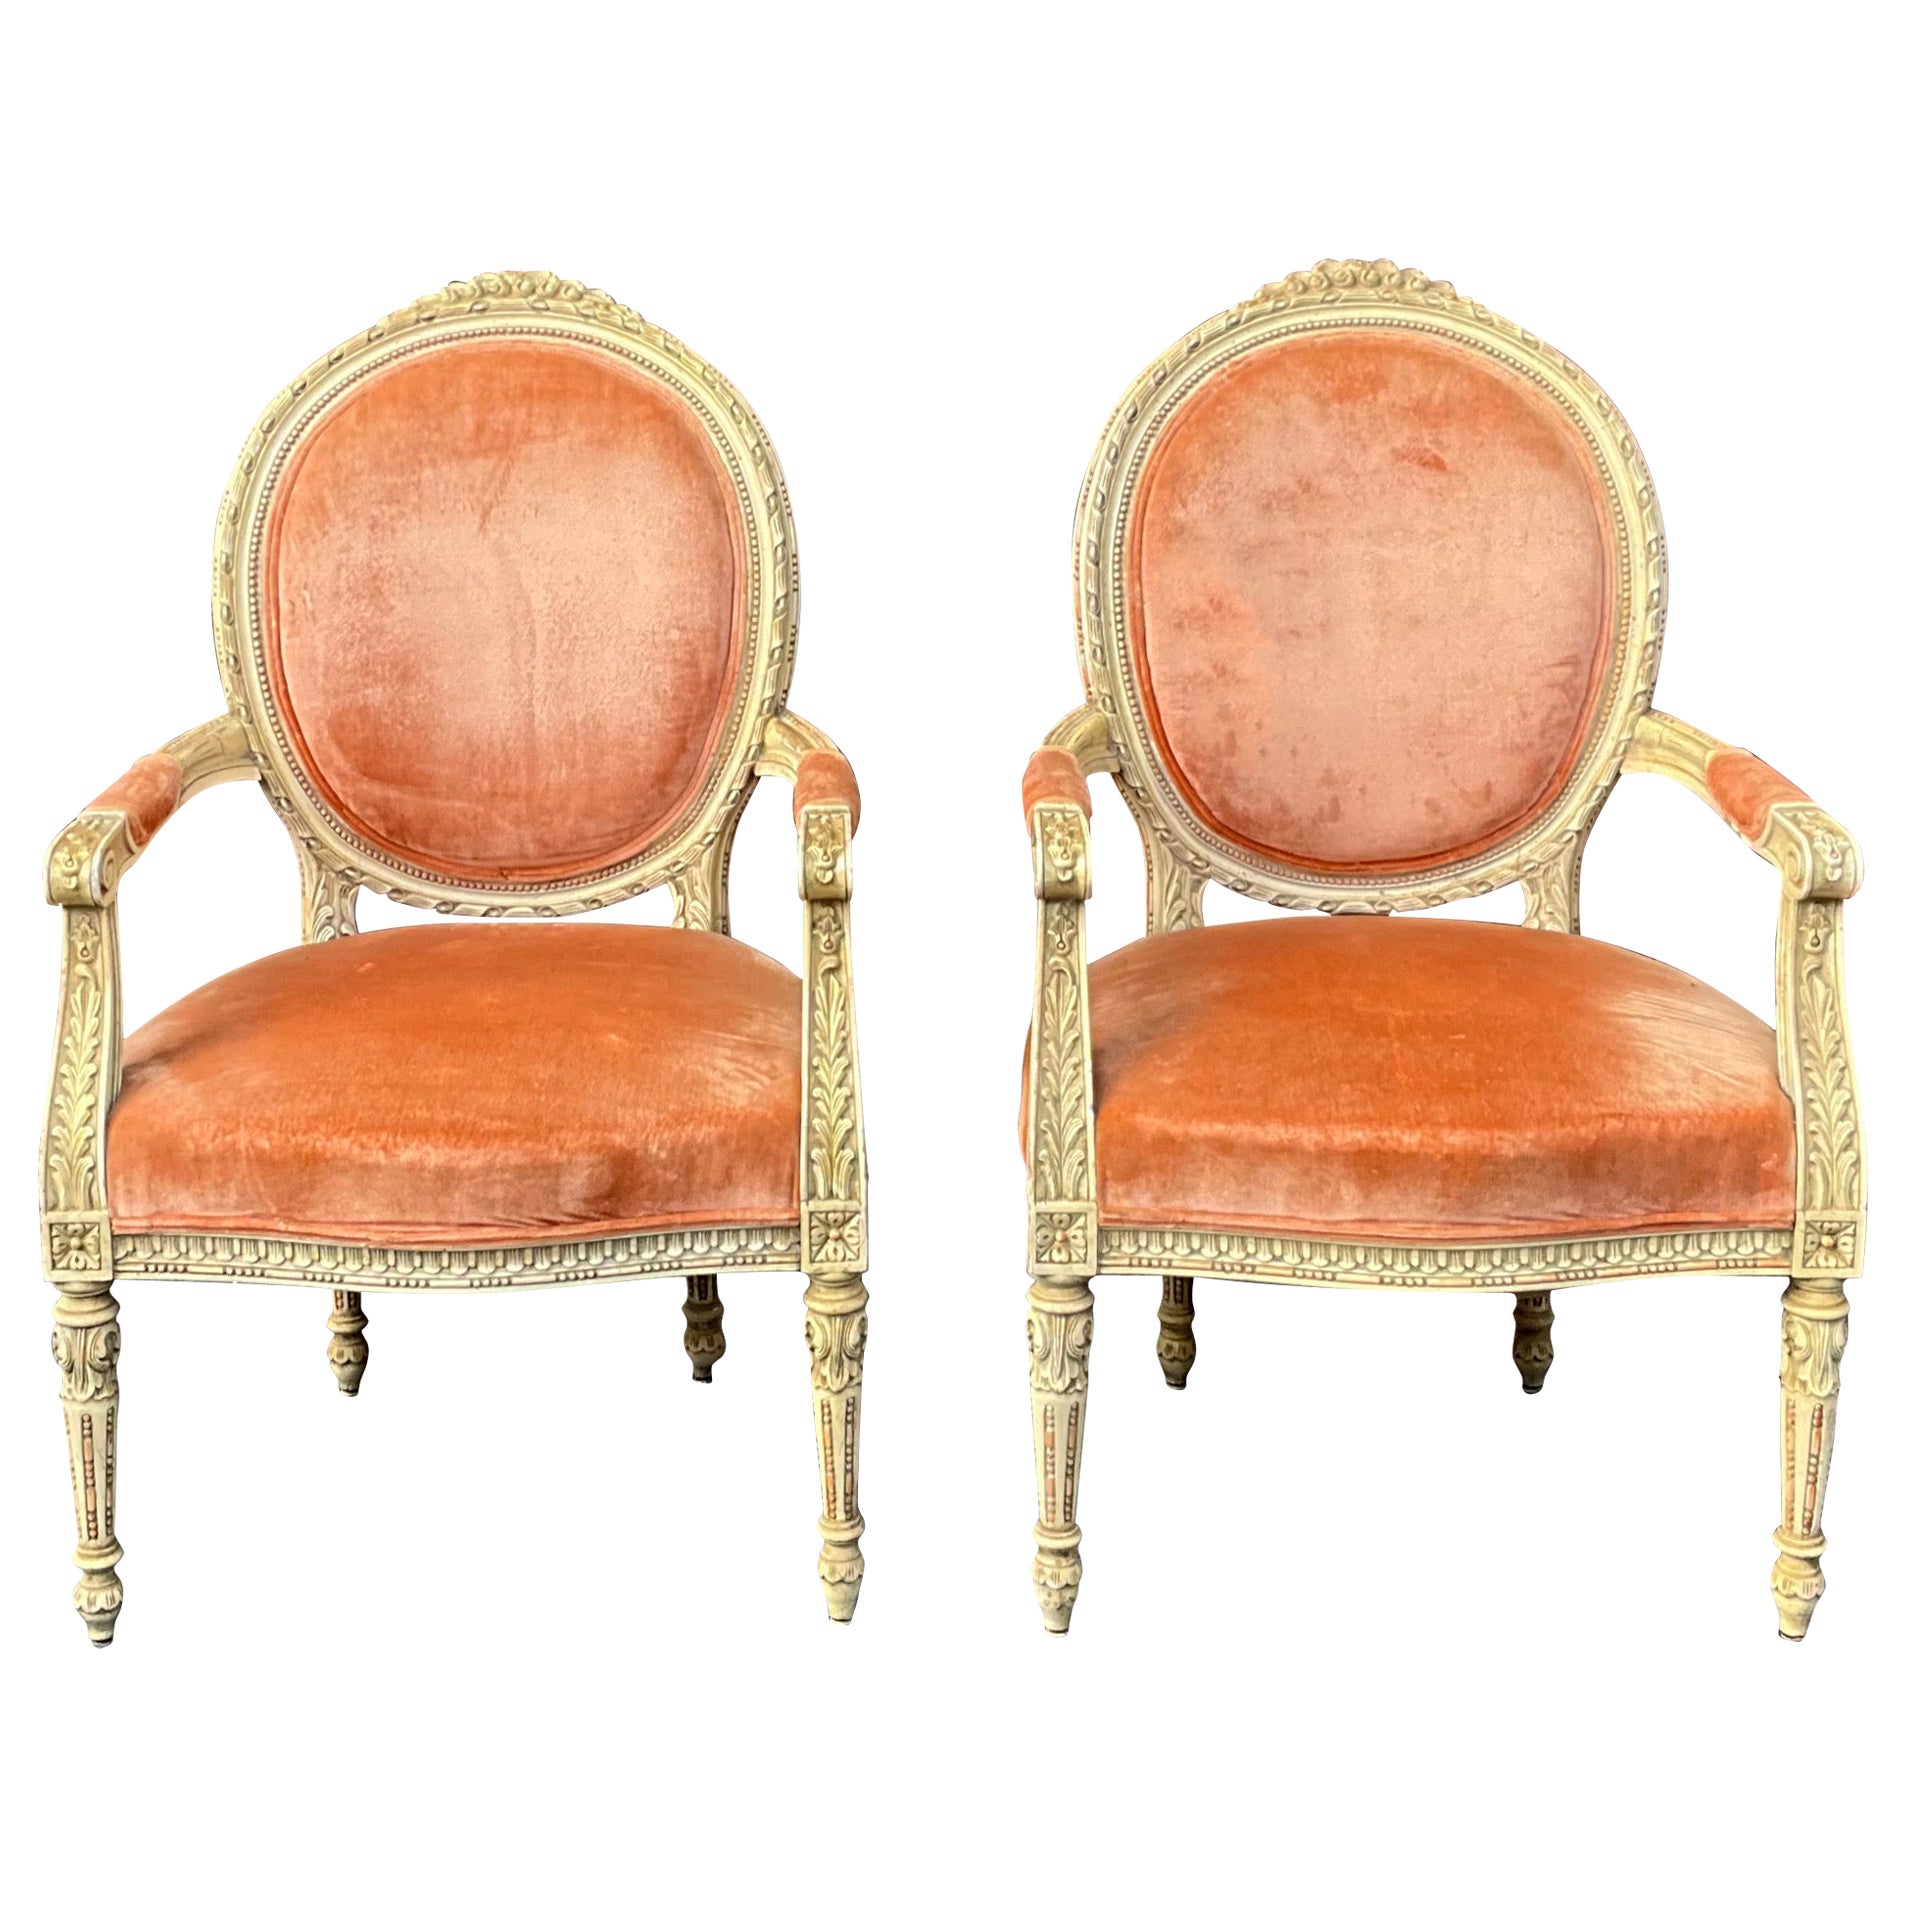 Französisch Louis XVI Stil geschnitzt & gemalt Bergere Stühle in Samt - Paar